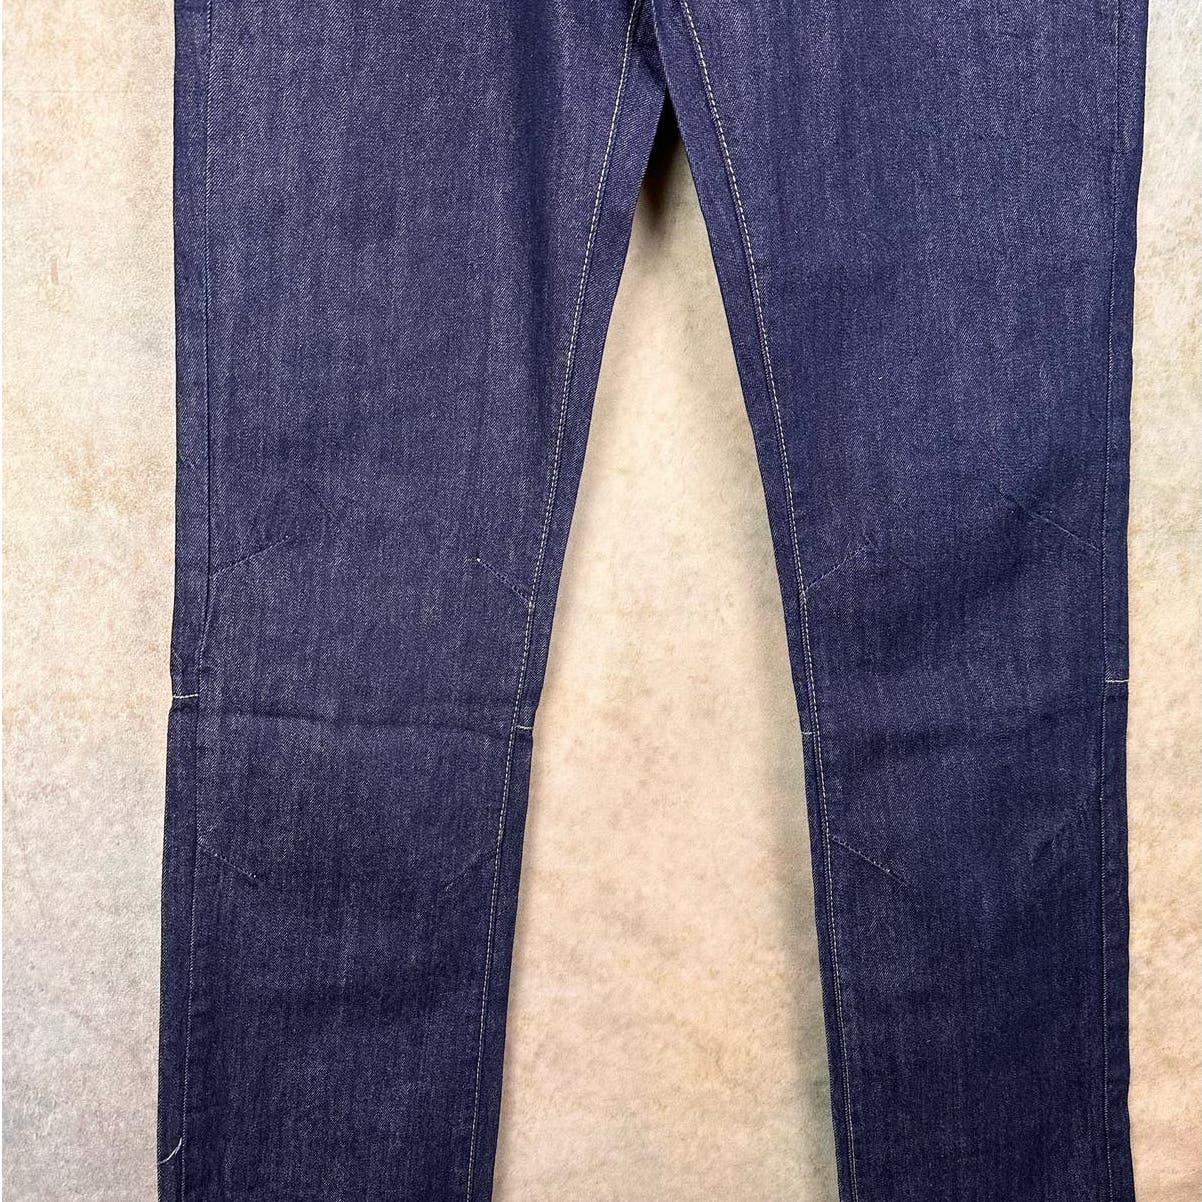 Vintage SouthPole Baggy Denim Jeans 34x36